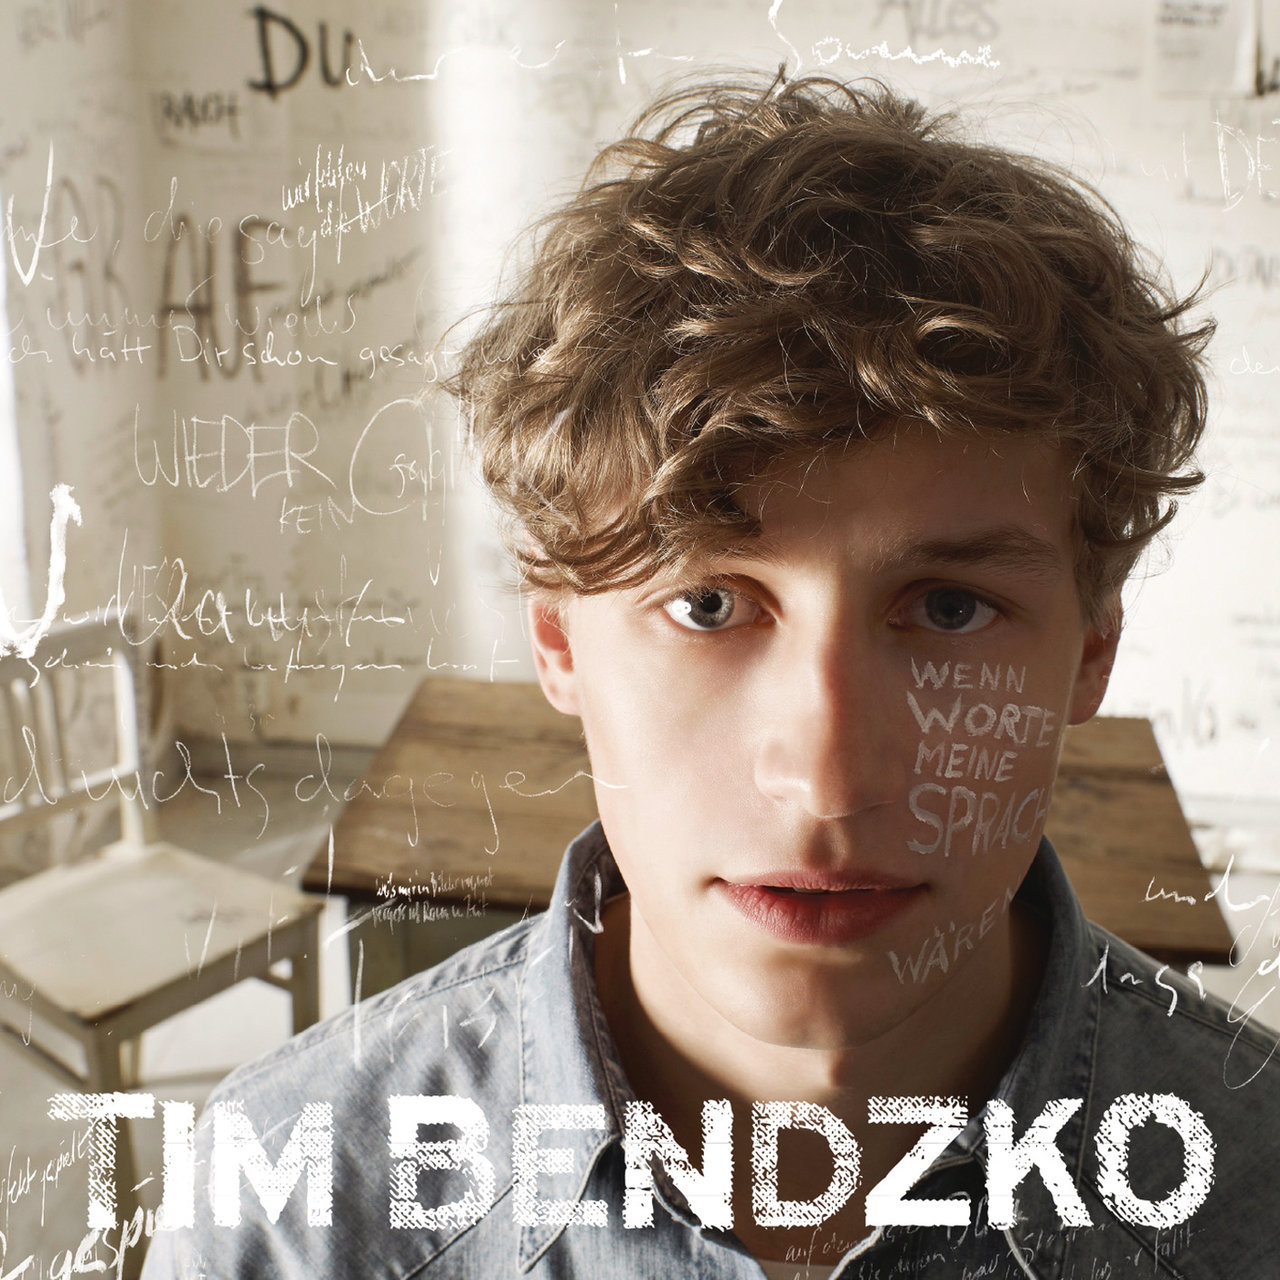 Tim Bendzko — Wenn Worte meine Sprache wären cover artwork